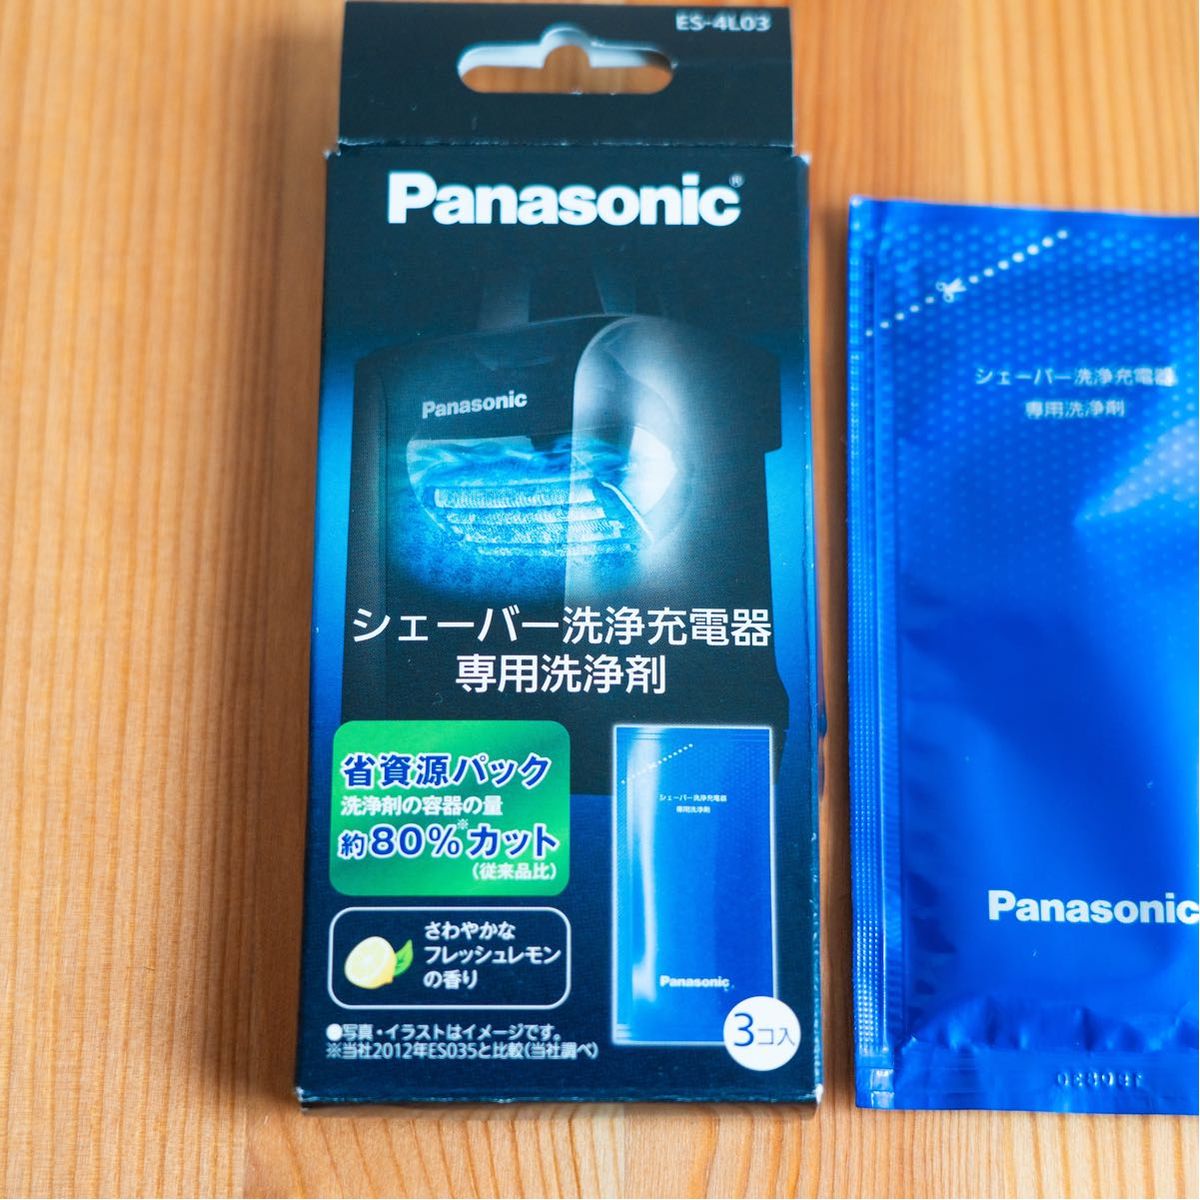 【新品】パナソニック シェーバー洗浄充電器専用洗浄剤 ES-4L03 3個入り Panasonic ES4L03 ラムダッシュ